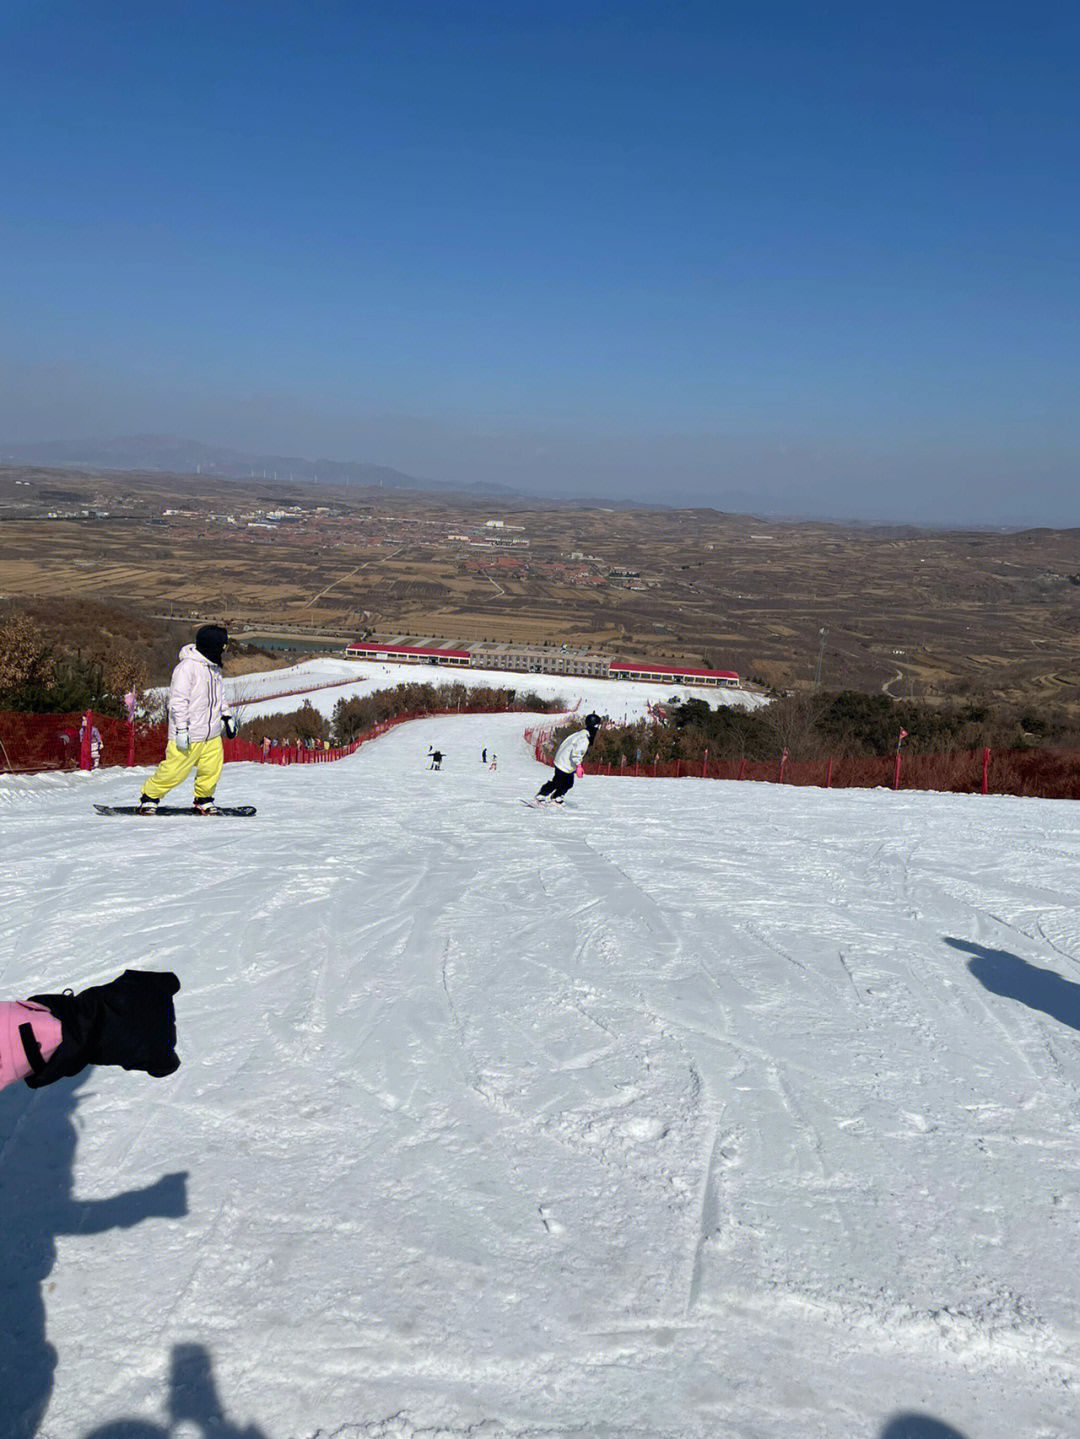 烟台南里滑雪公园图片